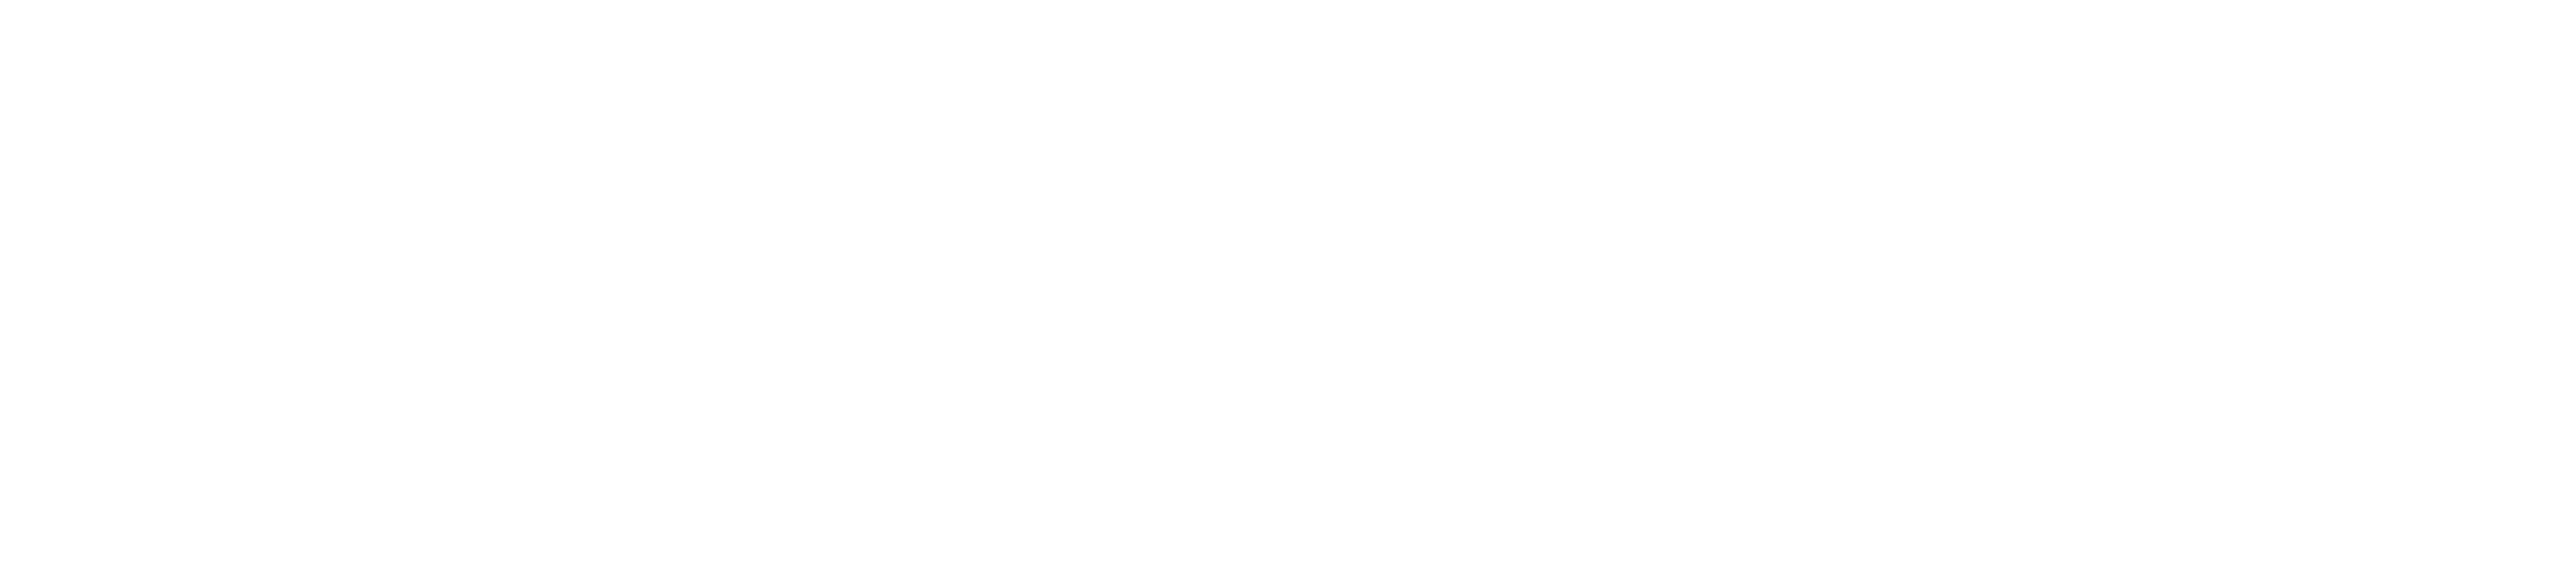 Colossyan logo